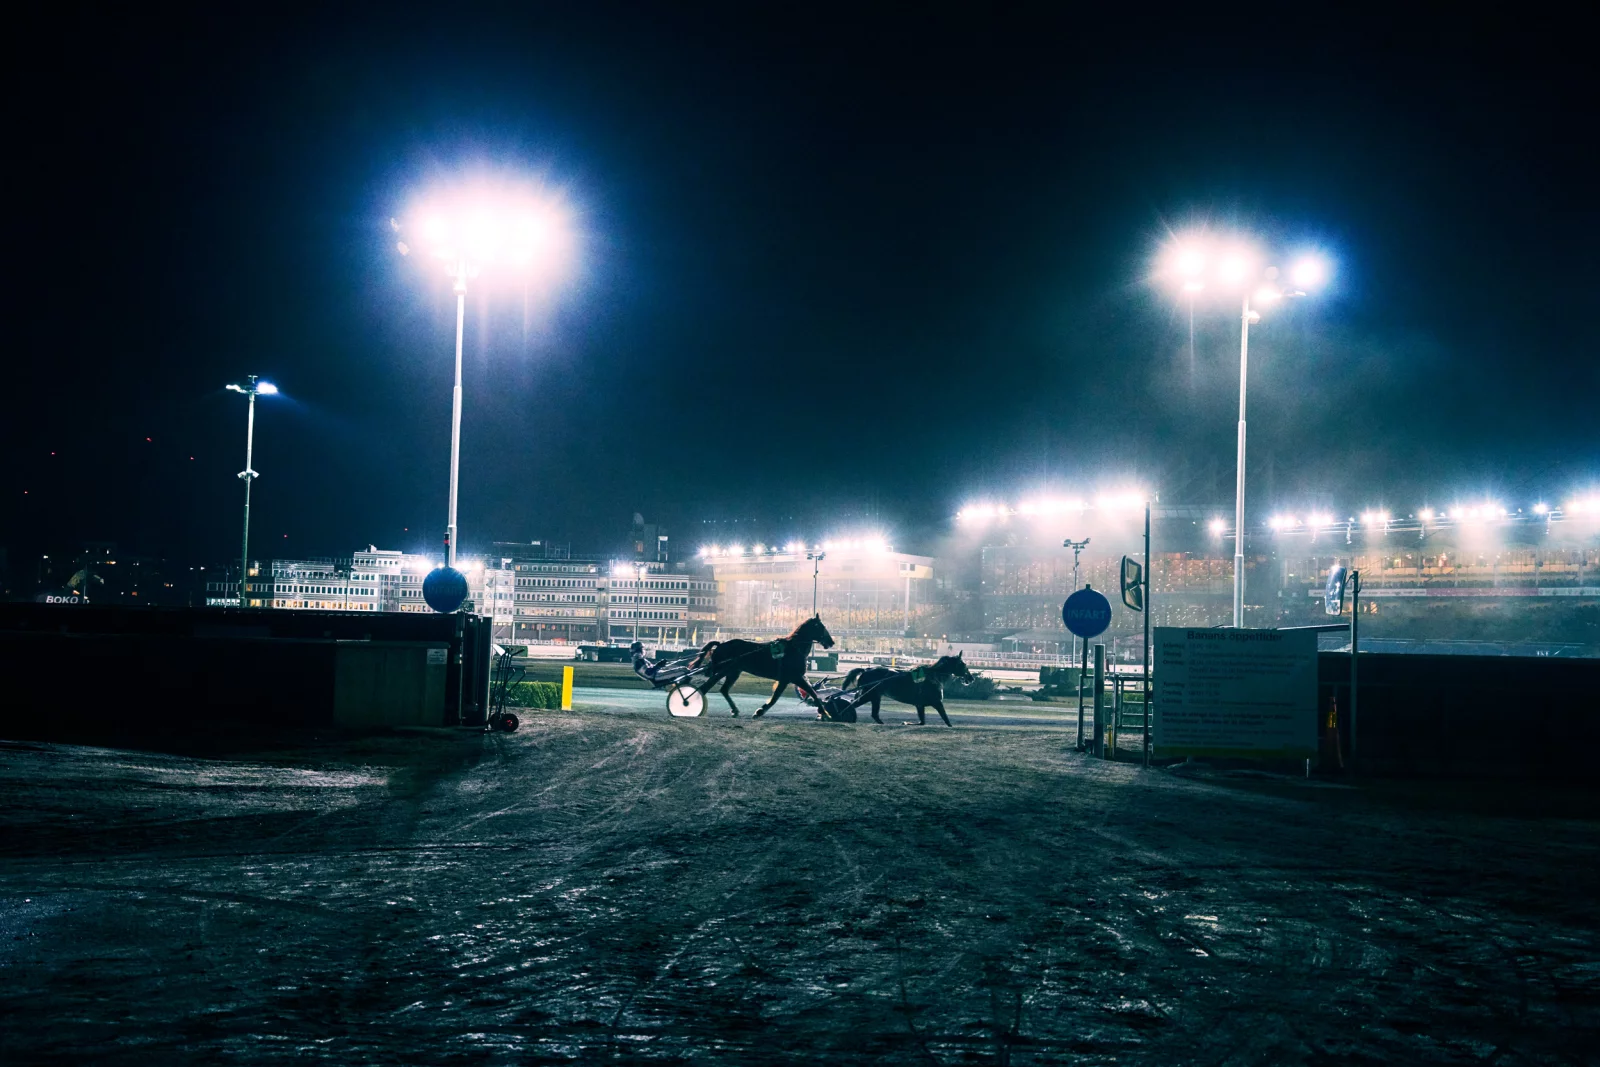 ATG Horse Racing 6 by Daniel BLOM